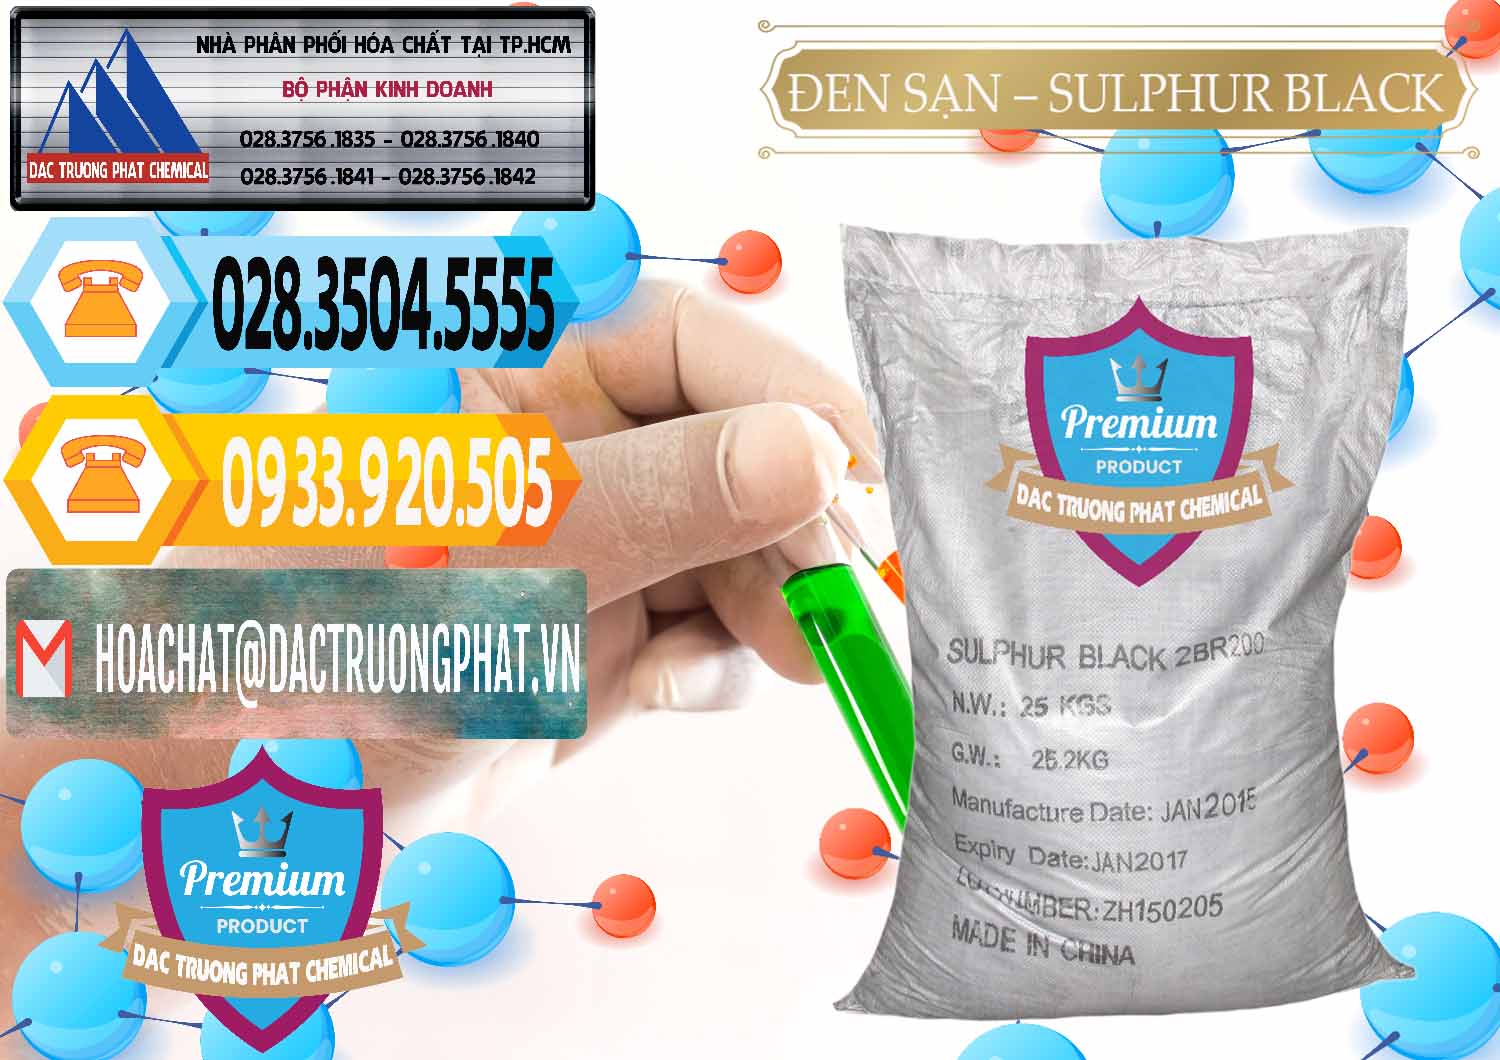 Công ty bán & phân phối Đen Sạn – Sulphur Black Trung Quốc China - 0062 - Chuyên phân phối & cung cấp hóa chất tại TP.HCM - hoachattayrua.net